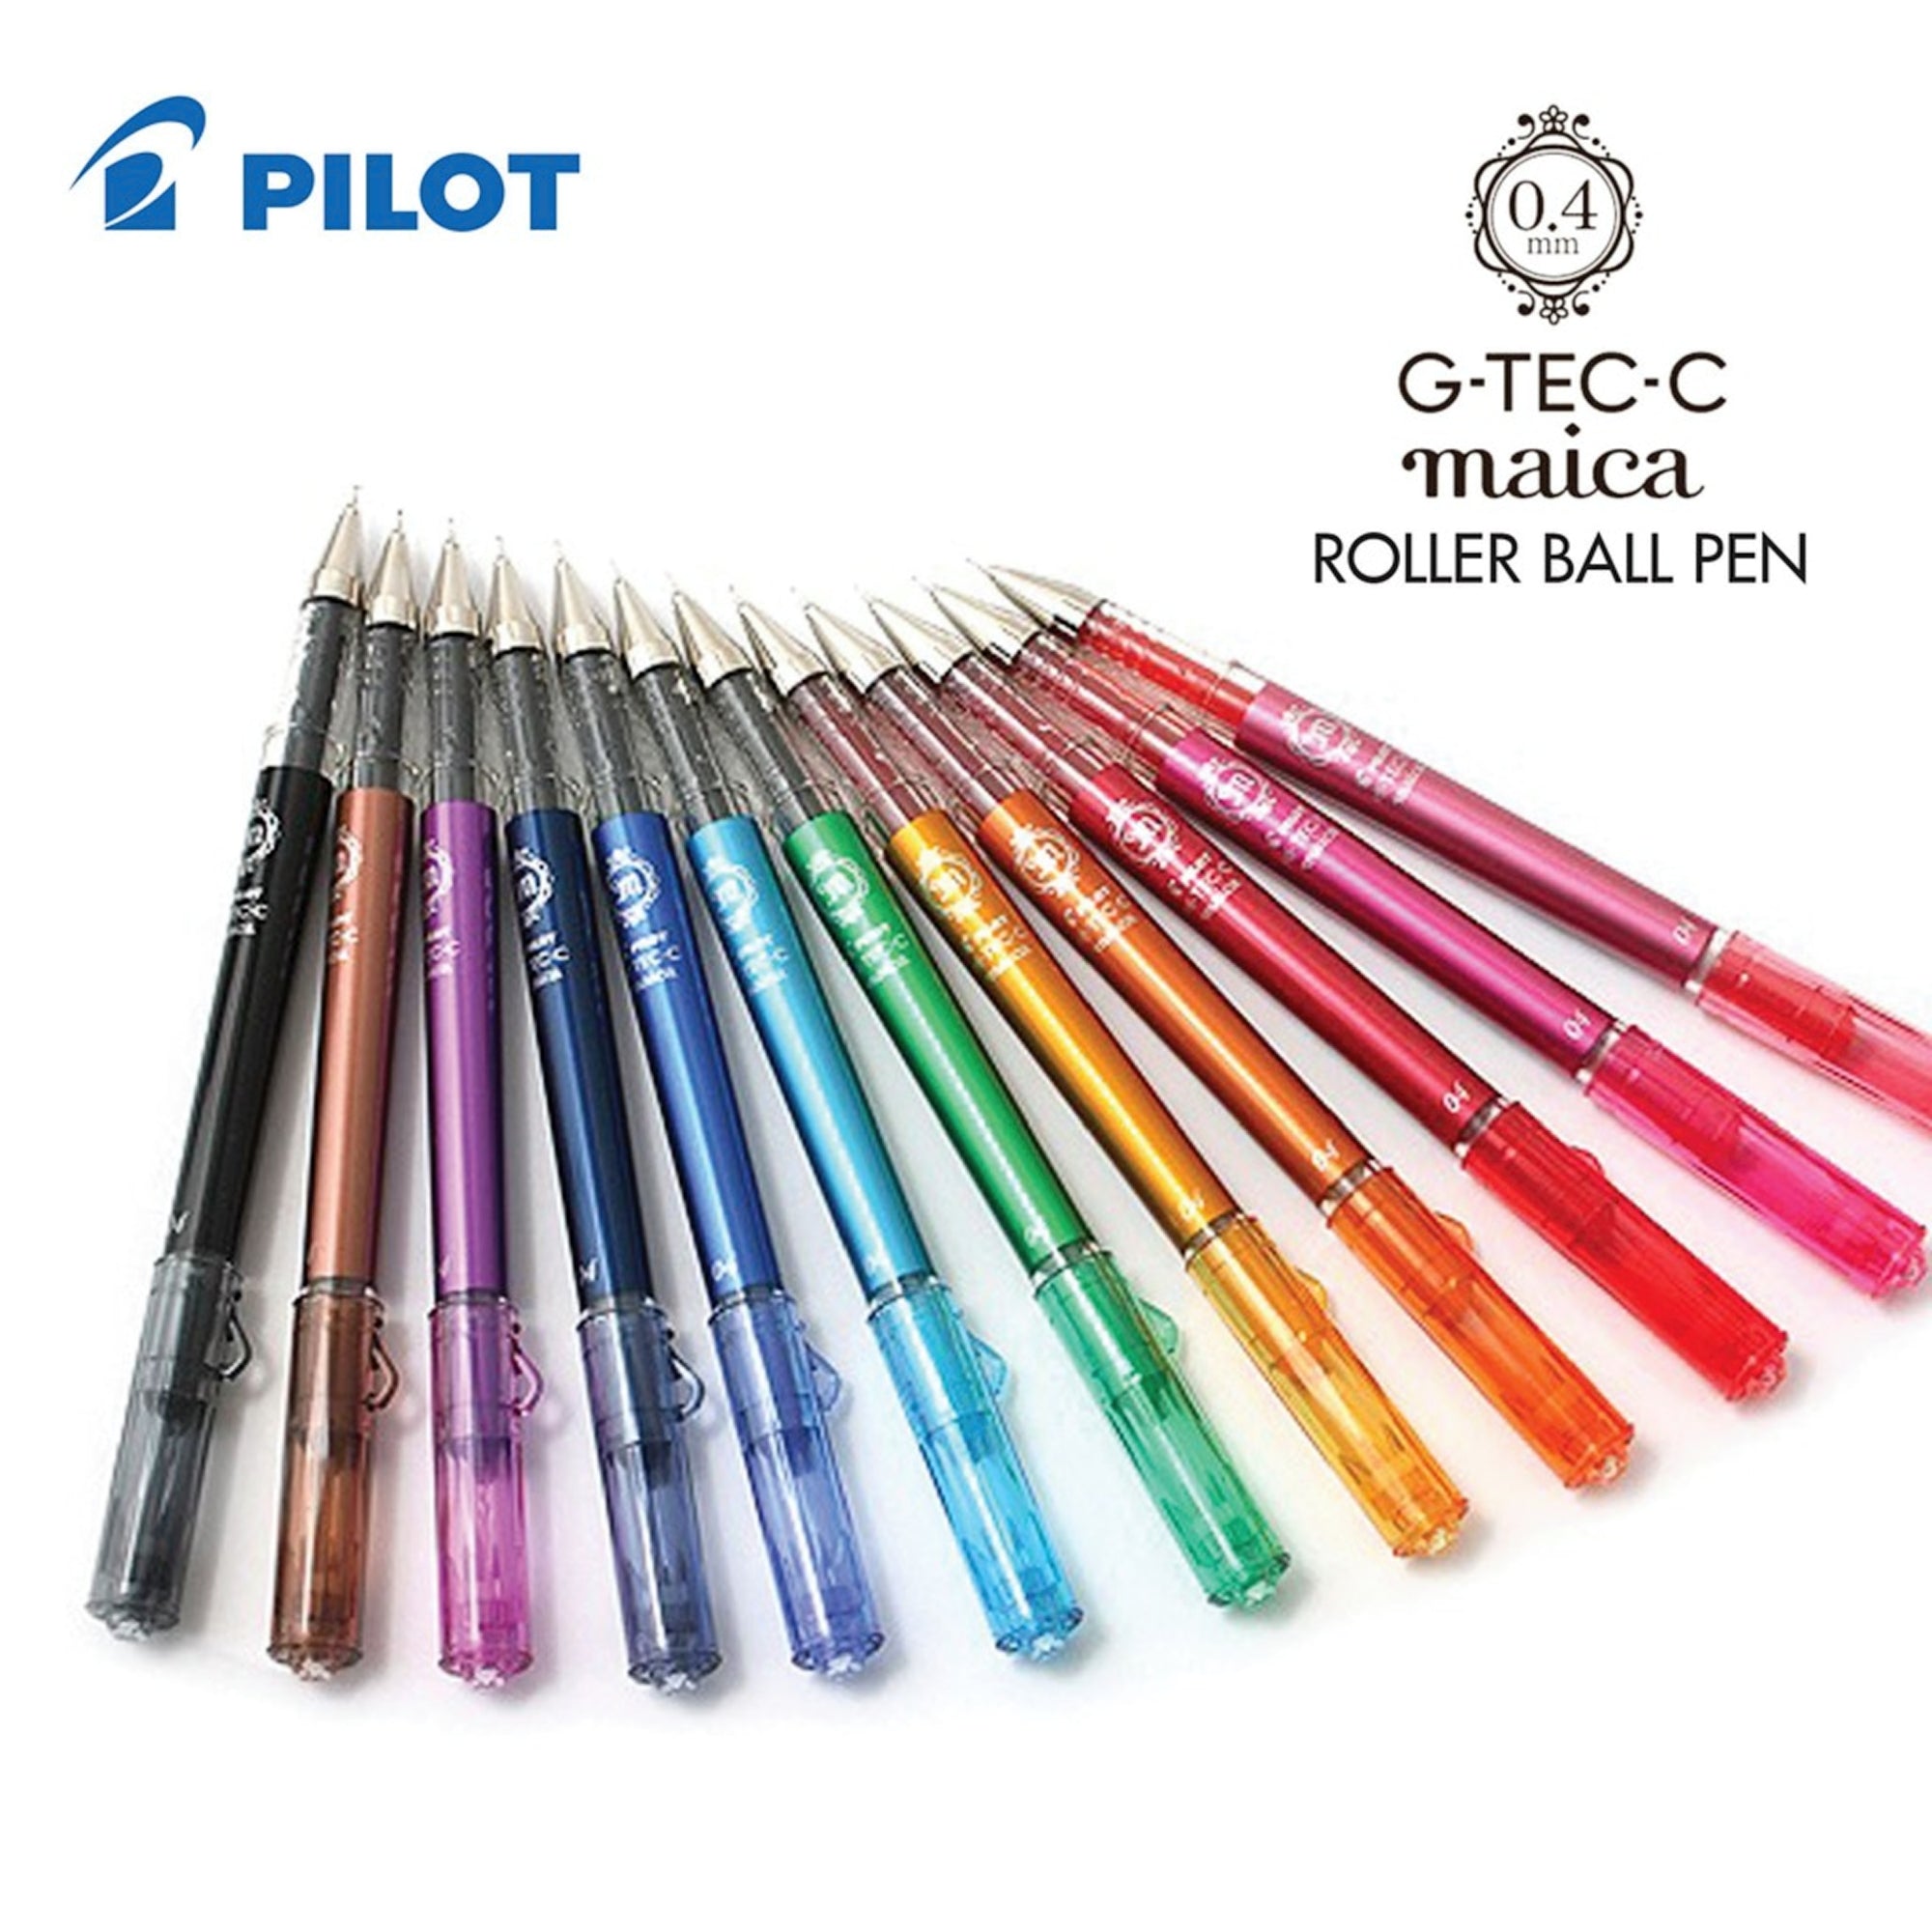 Pilot Hi-Tec-C Maica Gel Pen Various Colors | 0.4mm – The